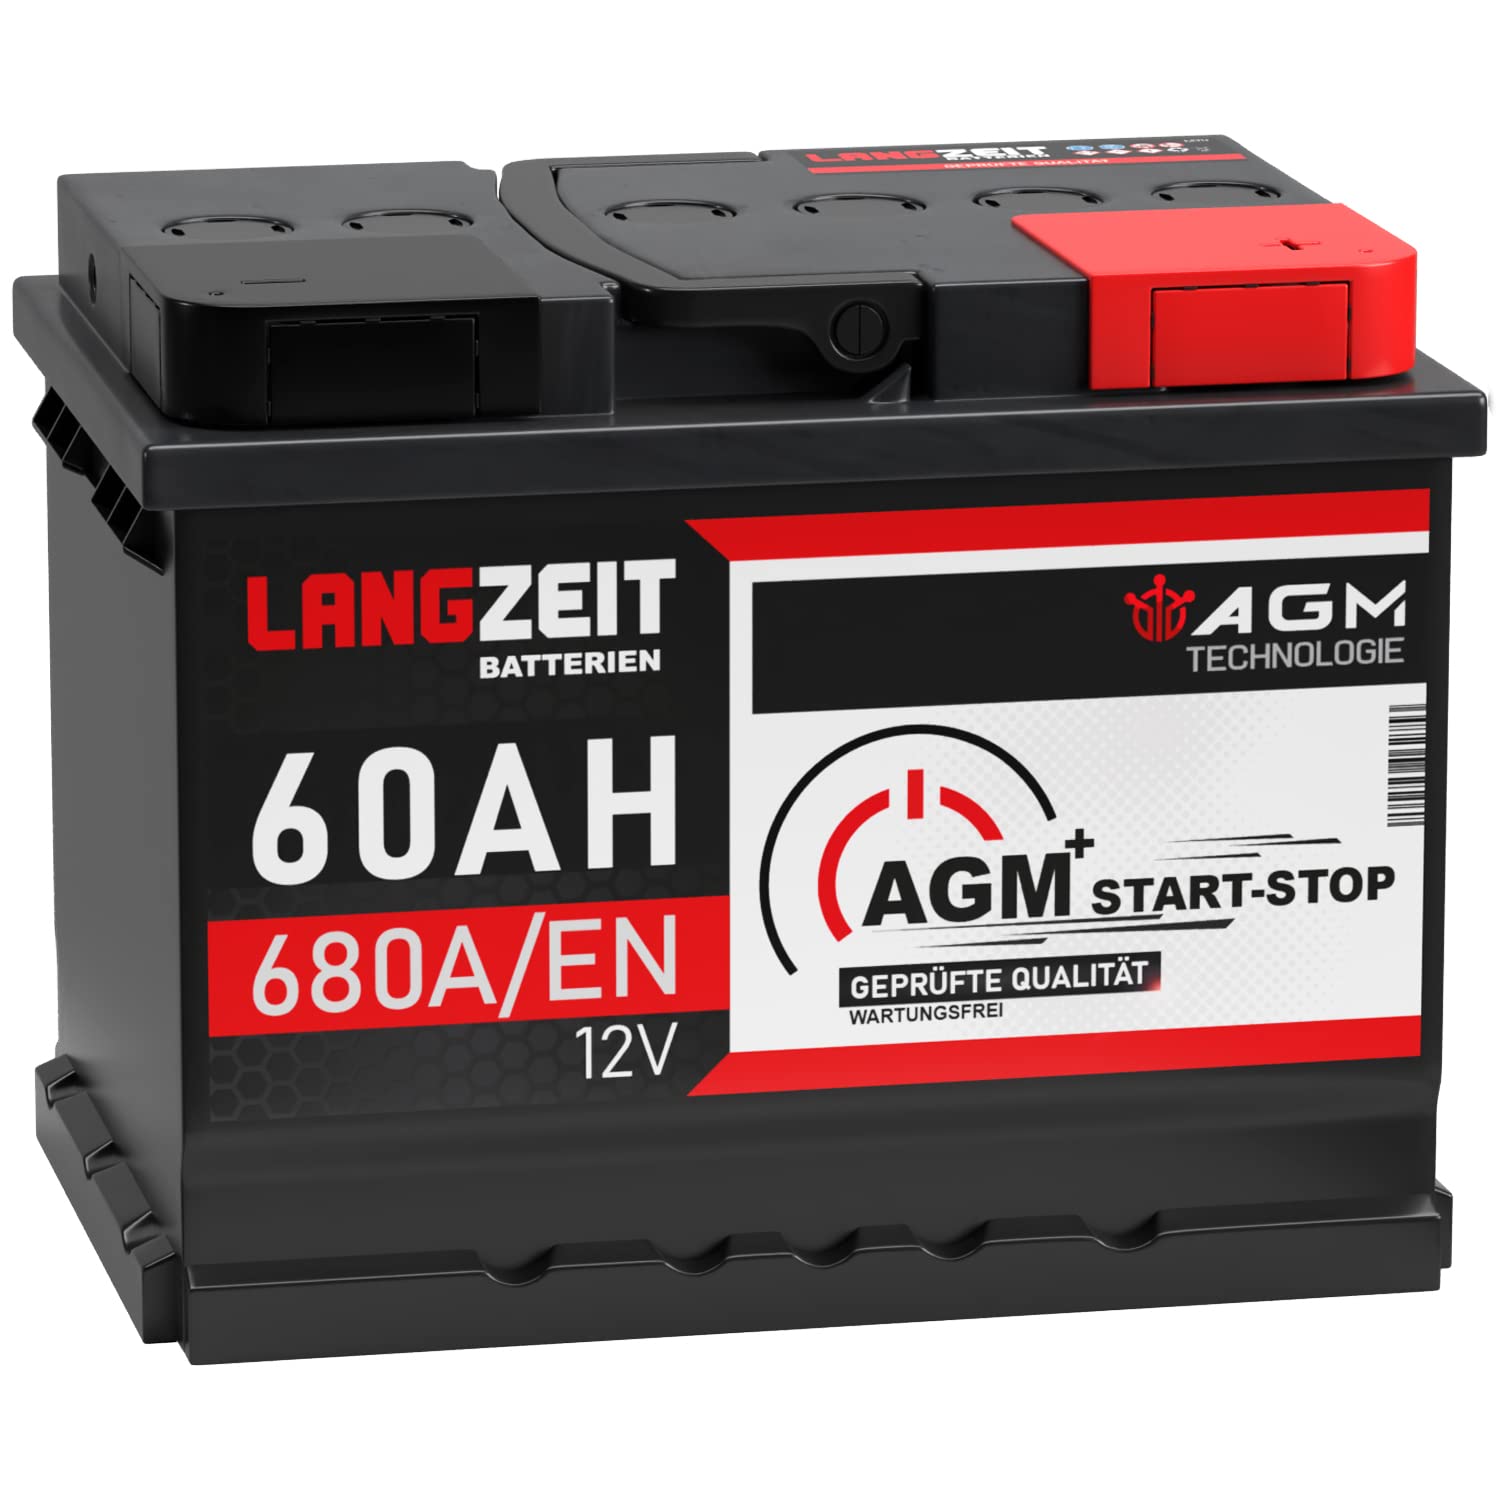 LANGZEIT AGM Batterie 60Ah 12V 680A/EN Start-Stop Autobatterie VRLA Batterie von LANGZEIT Batterien